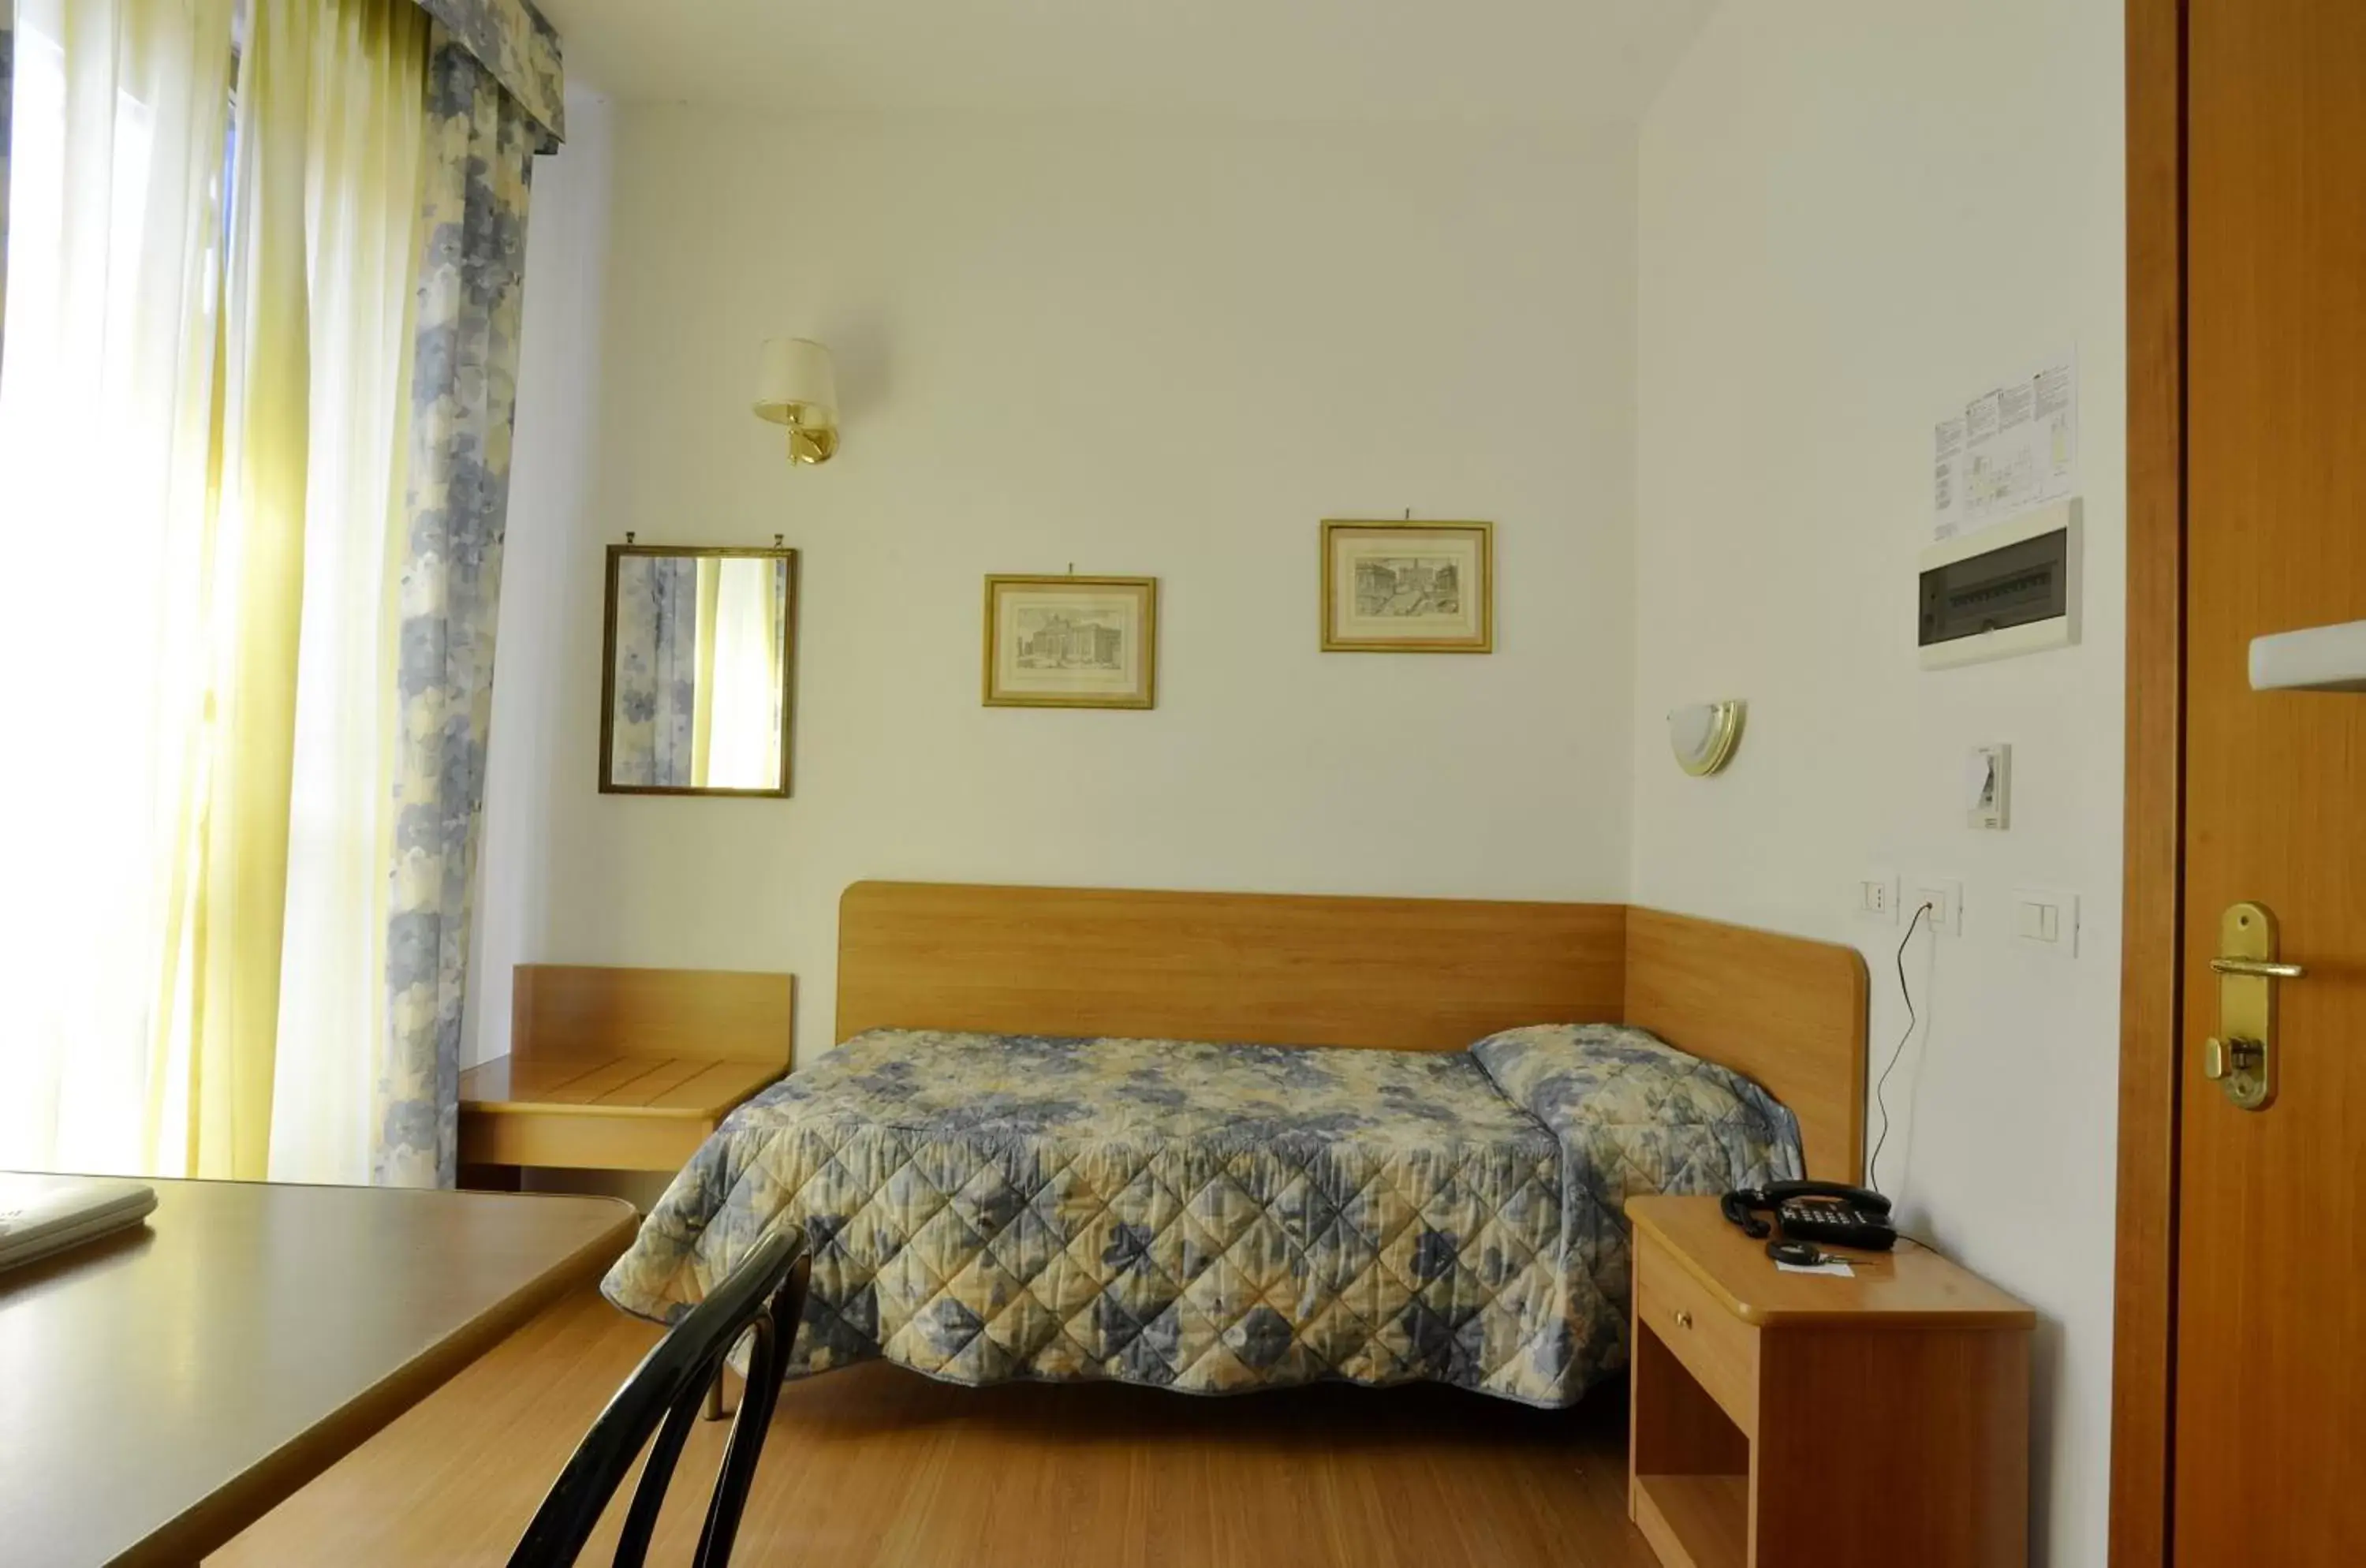 Bedroom, Room Photo in Hotel Tirreno